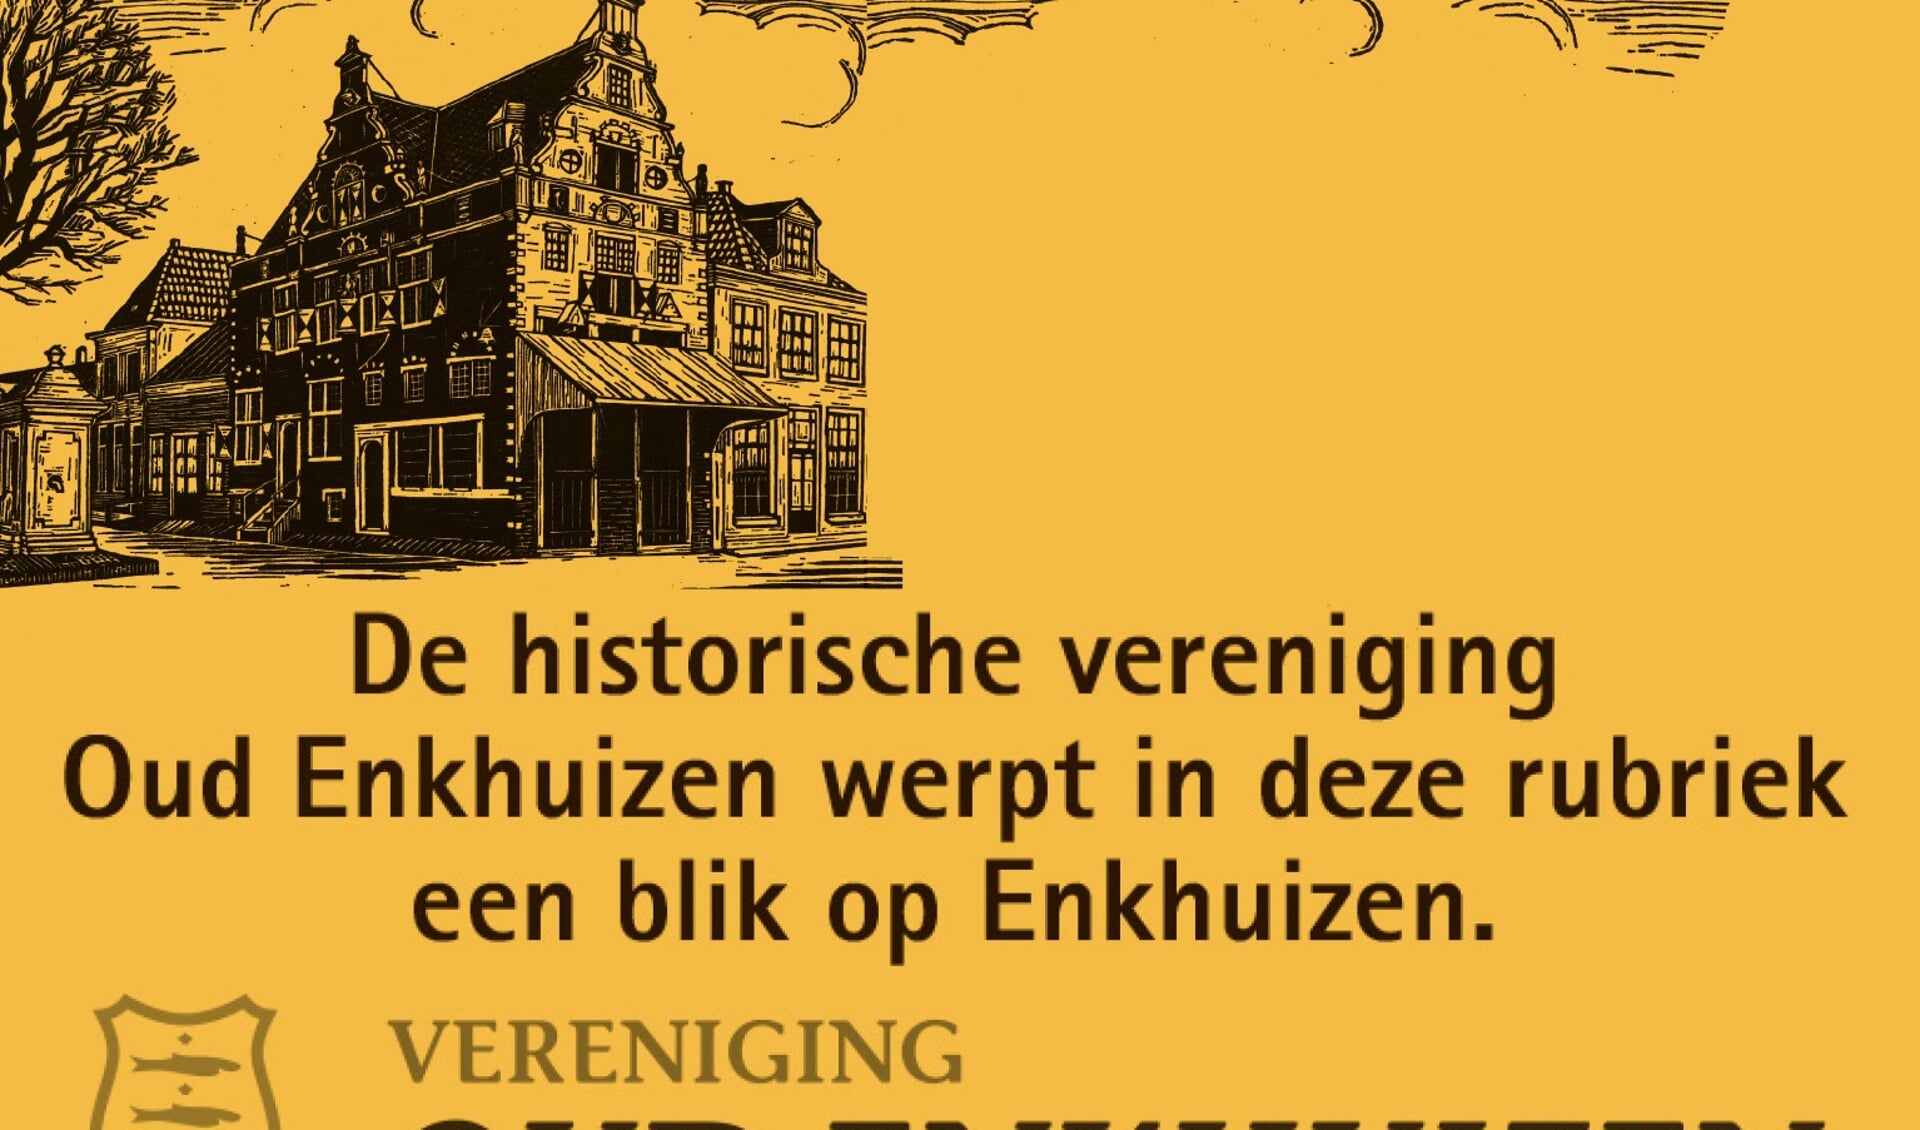 Maandelijks een mooi historische verhaal van vereniging Oud Enkhuizen in weekblad De Drom.